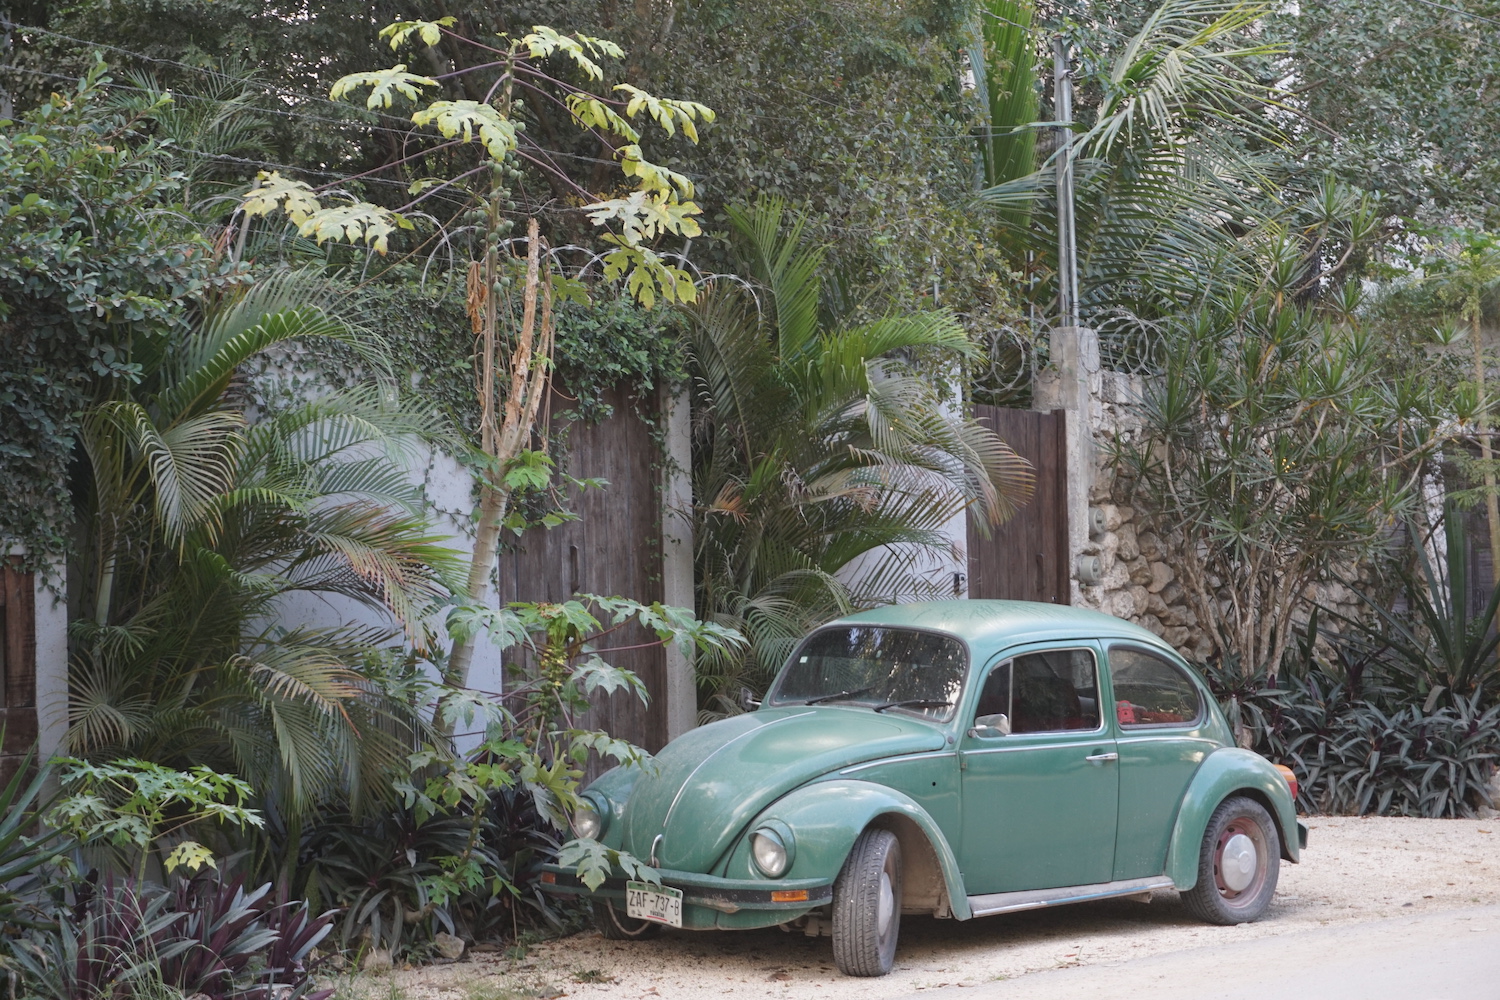 El frente de un VW Beetle clásico verde en México, la pared frontal de una casa y palmeras en el fondo.